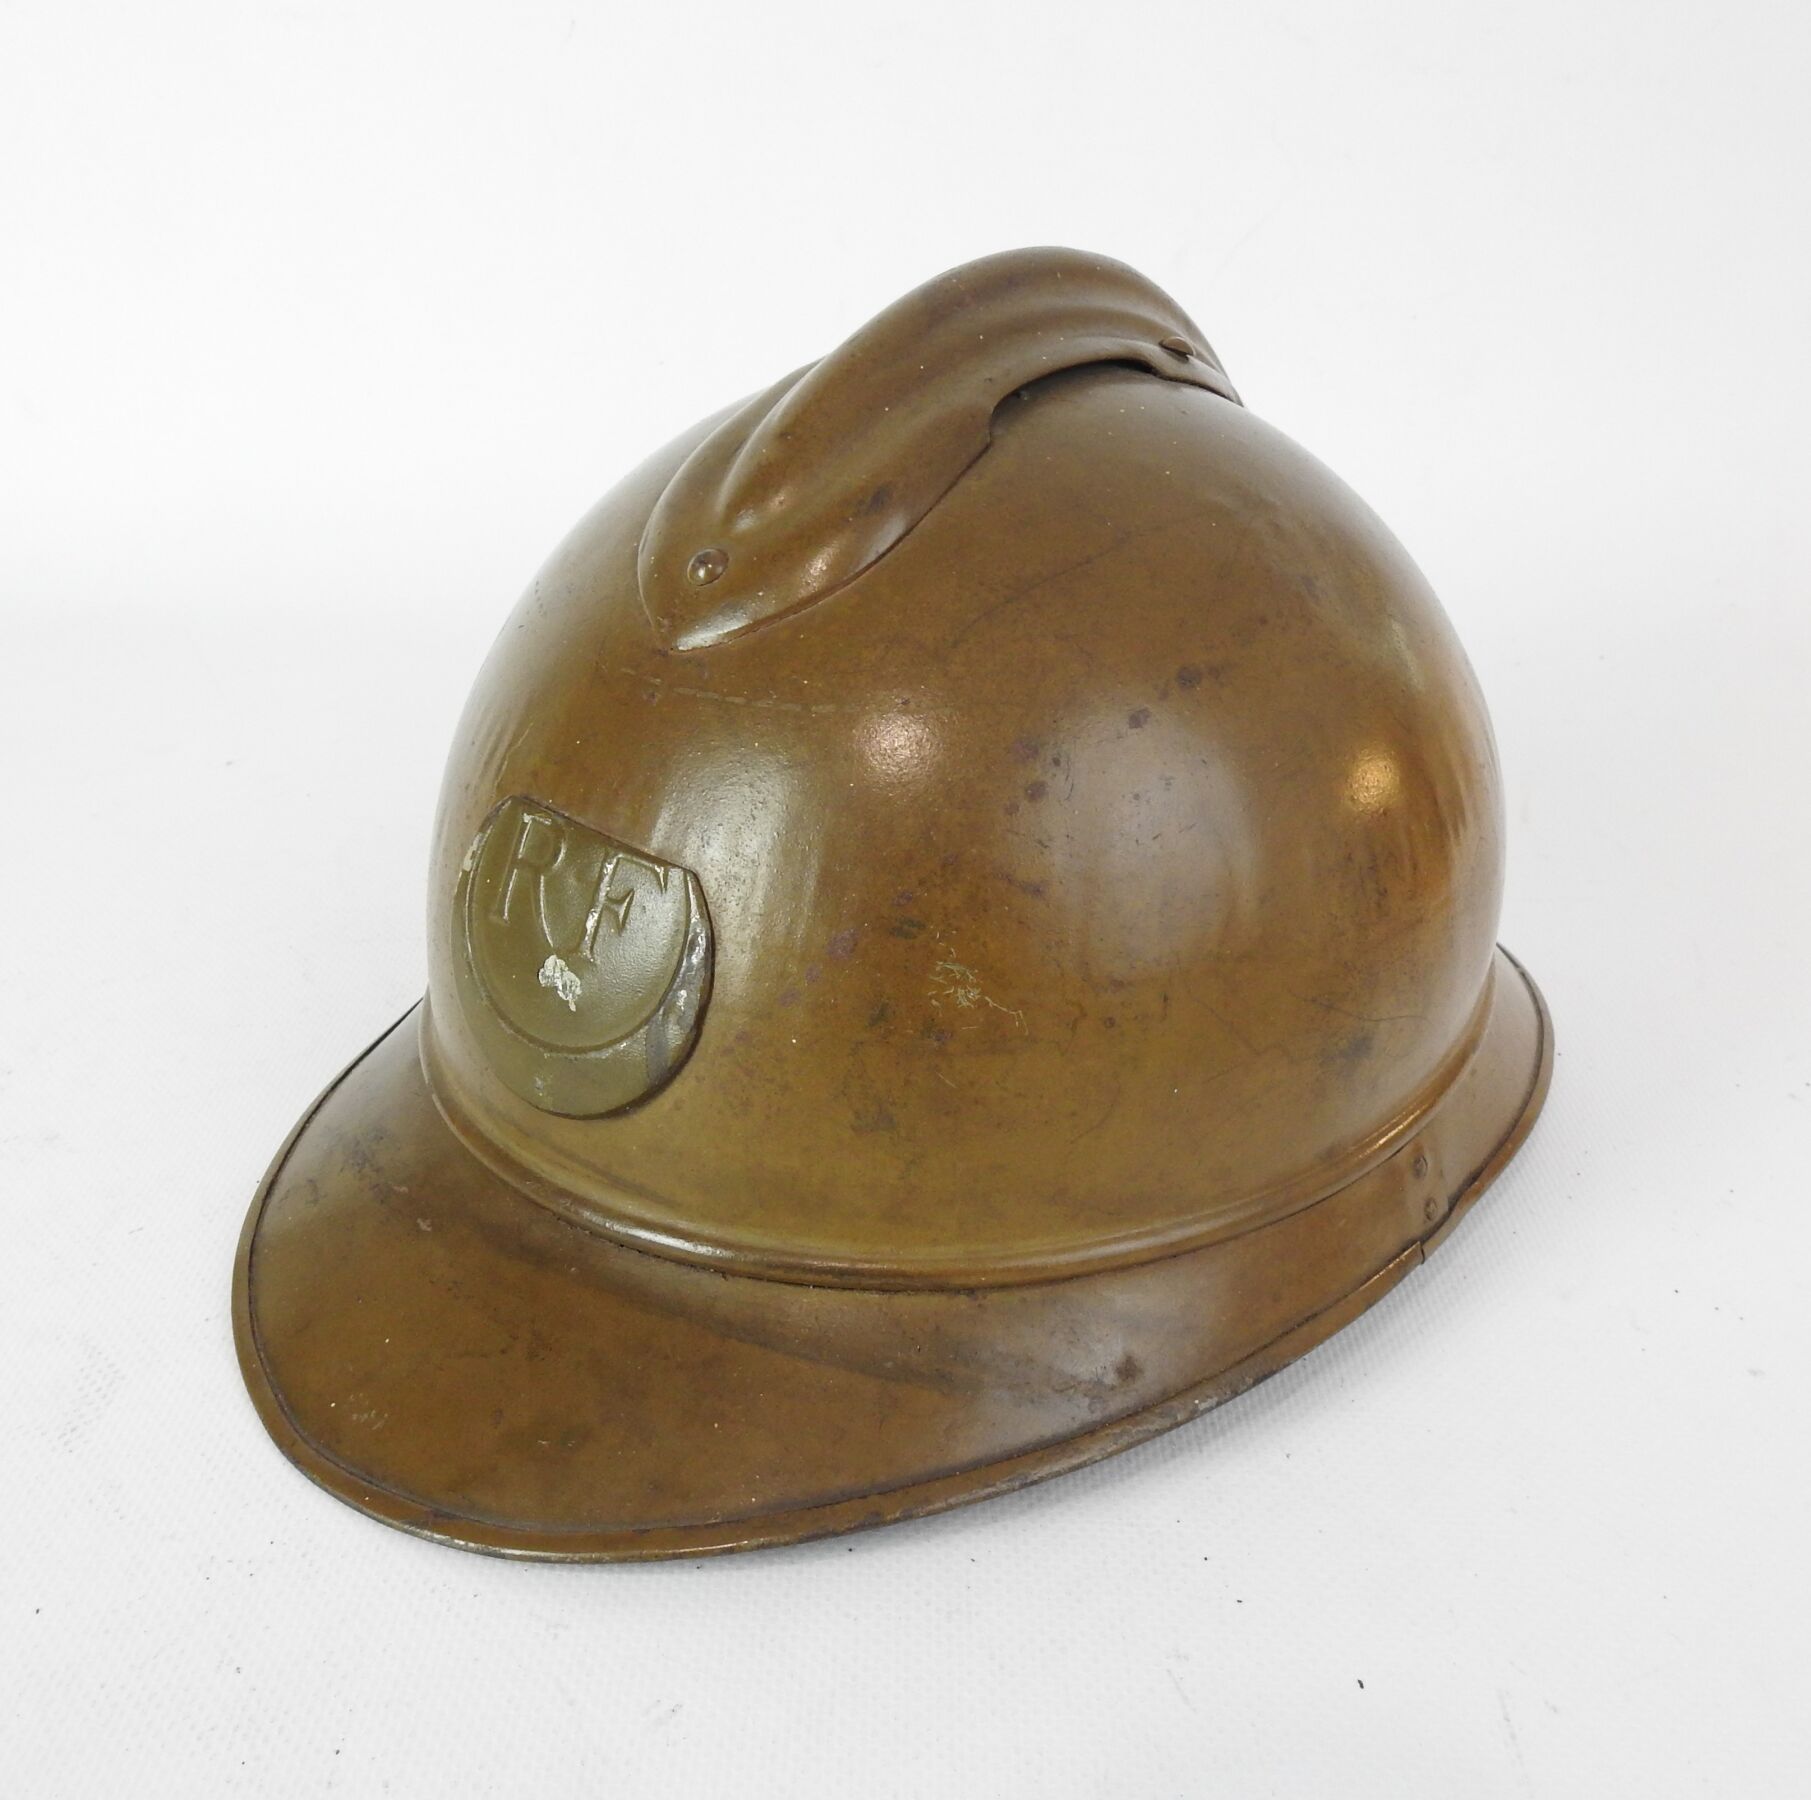 Null 阿尔及利亚步枪手。 阿德里安头盔模型1915年在钢厂涂成卡其色，武器的前部徽章颜色略有不同，第二种类型的内帽为棕色皮革，4个铝制调整片，棕色编织皮革下&hellip;